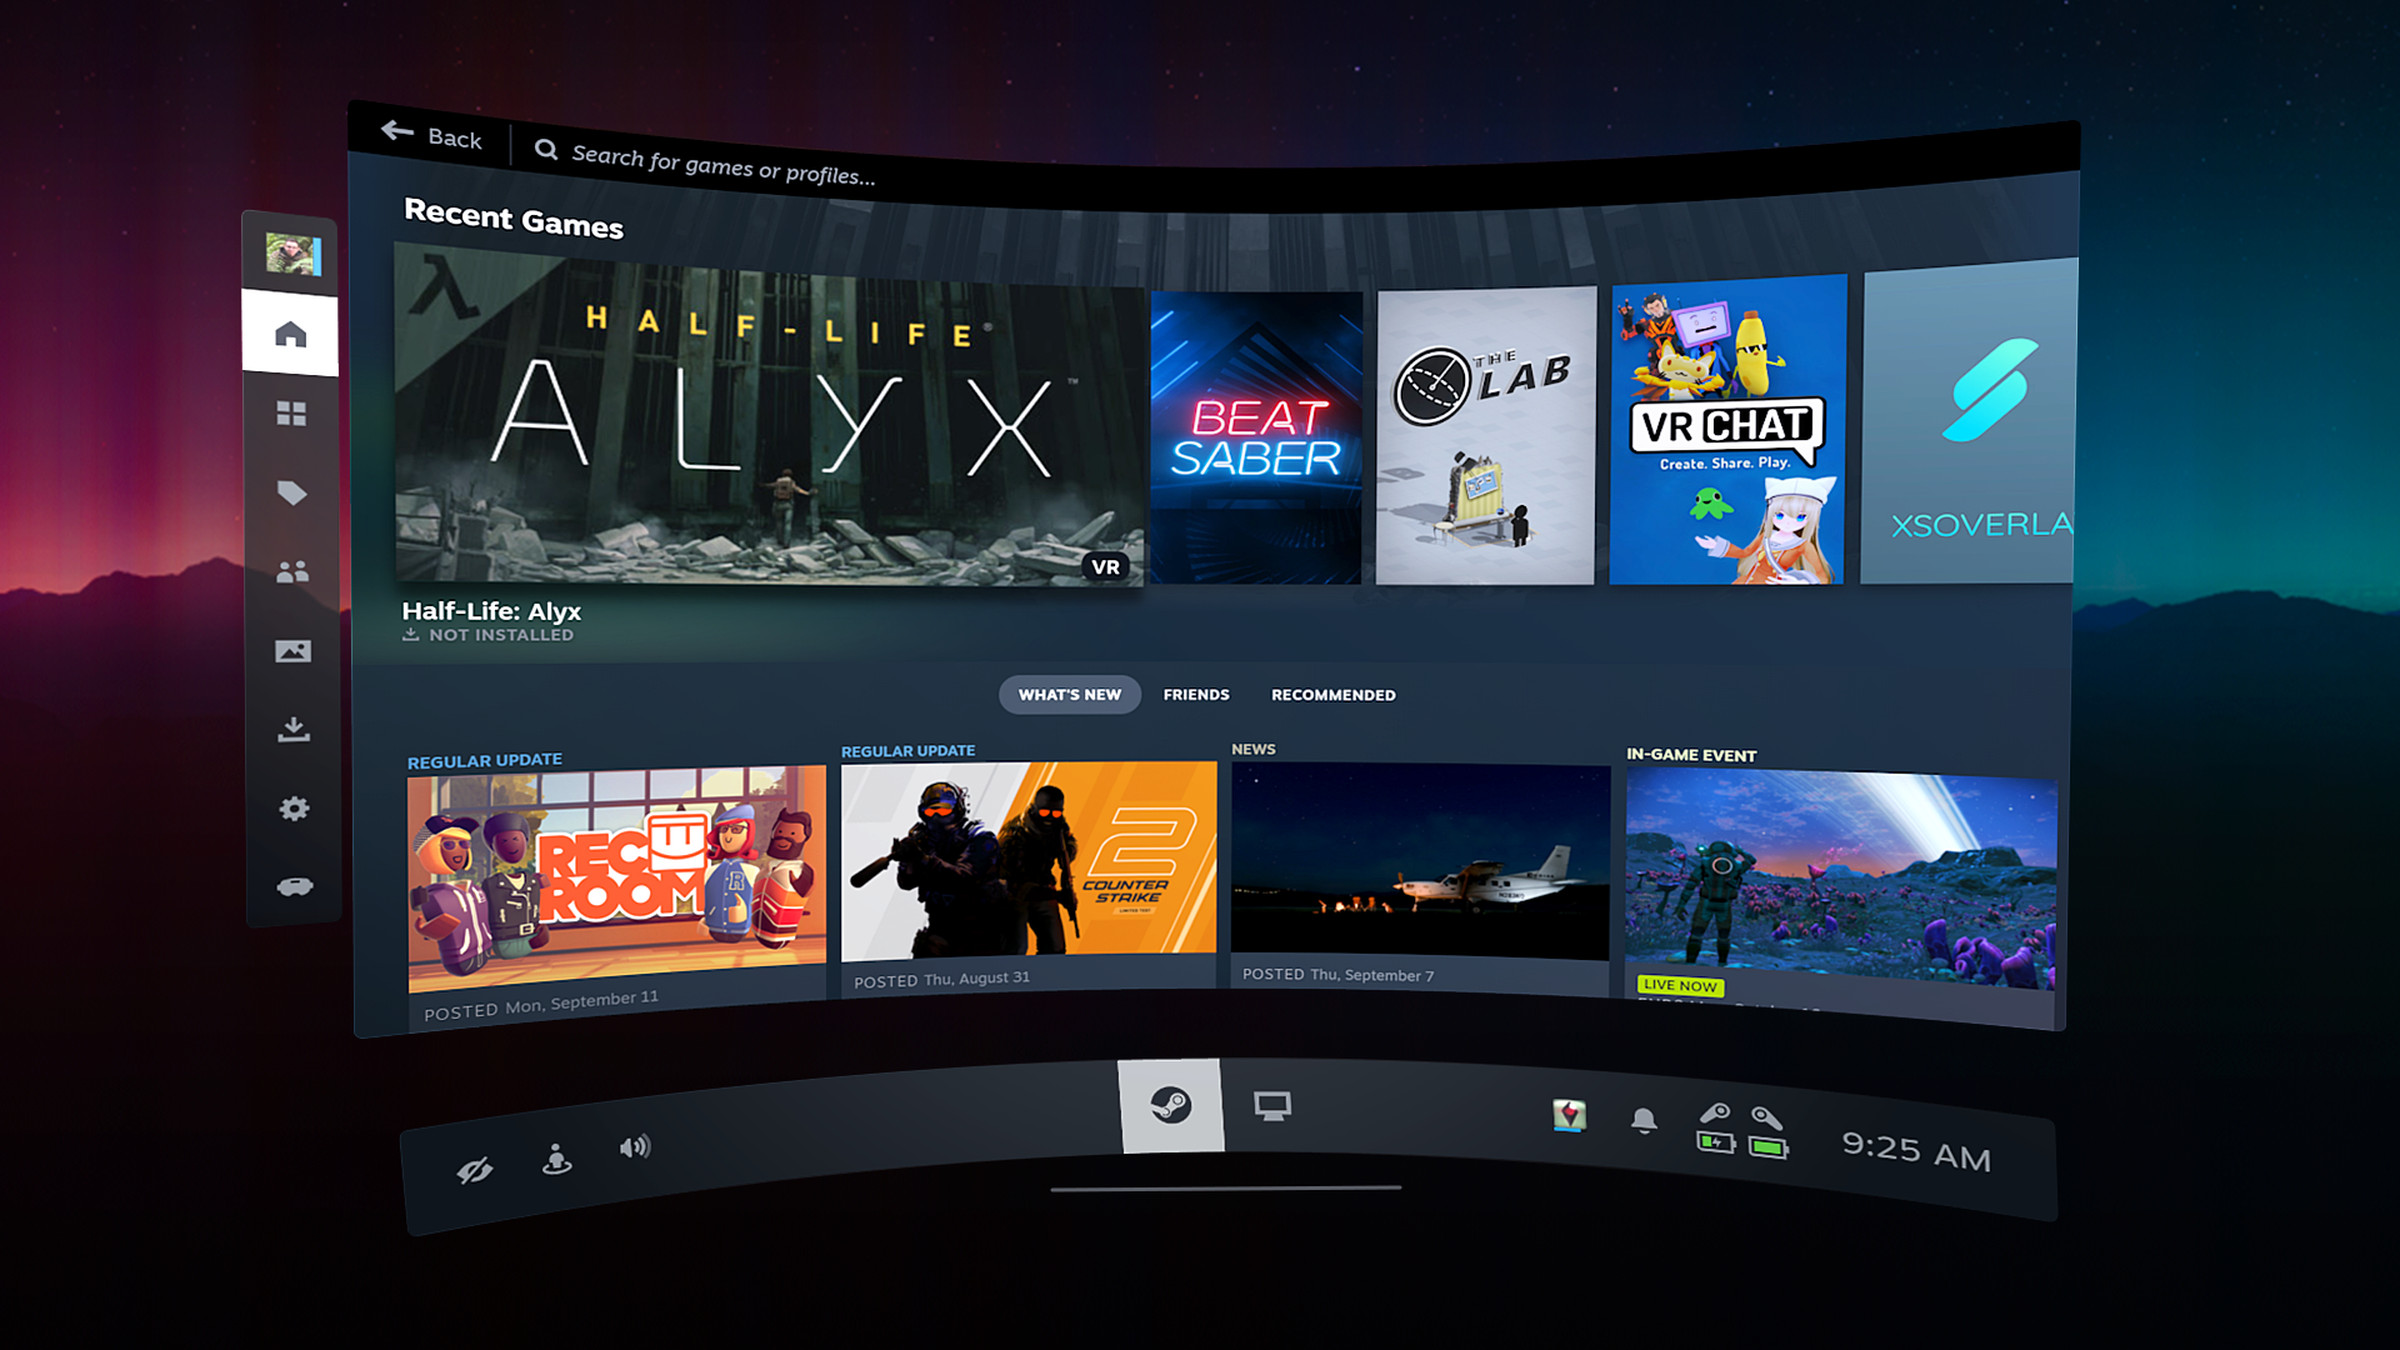 Valve suddenly releases SteamVR 2.0 in beta — as headset rumors swirl